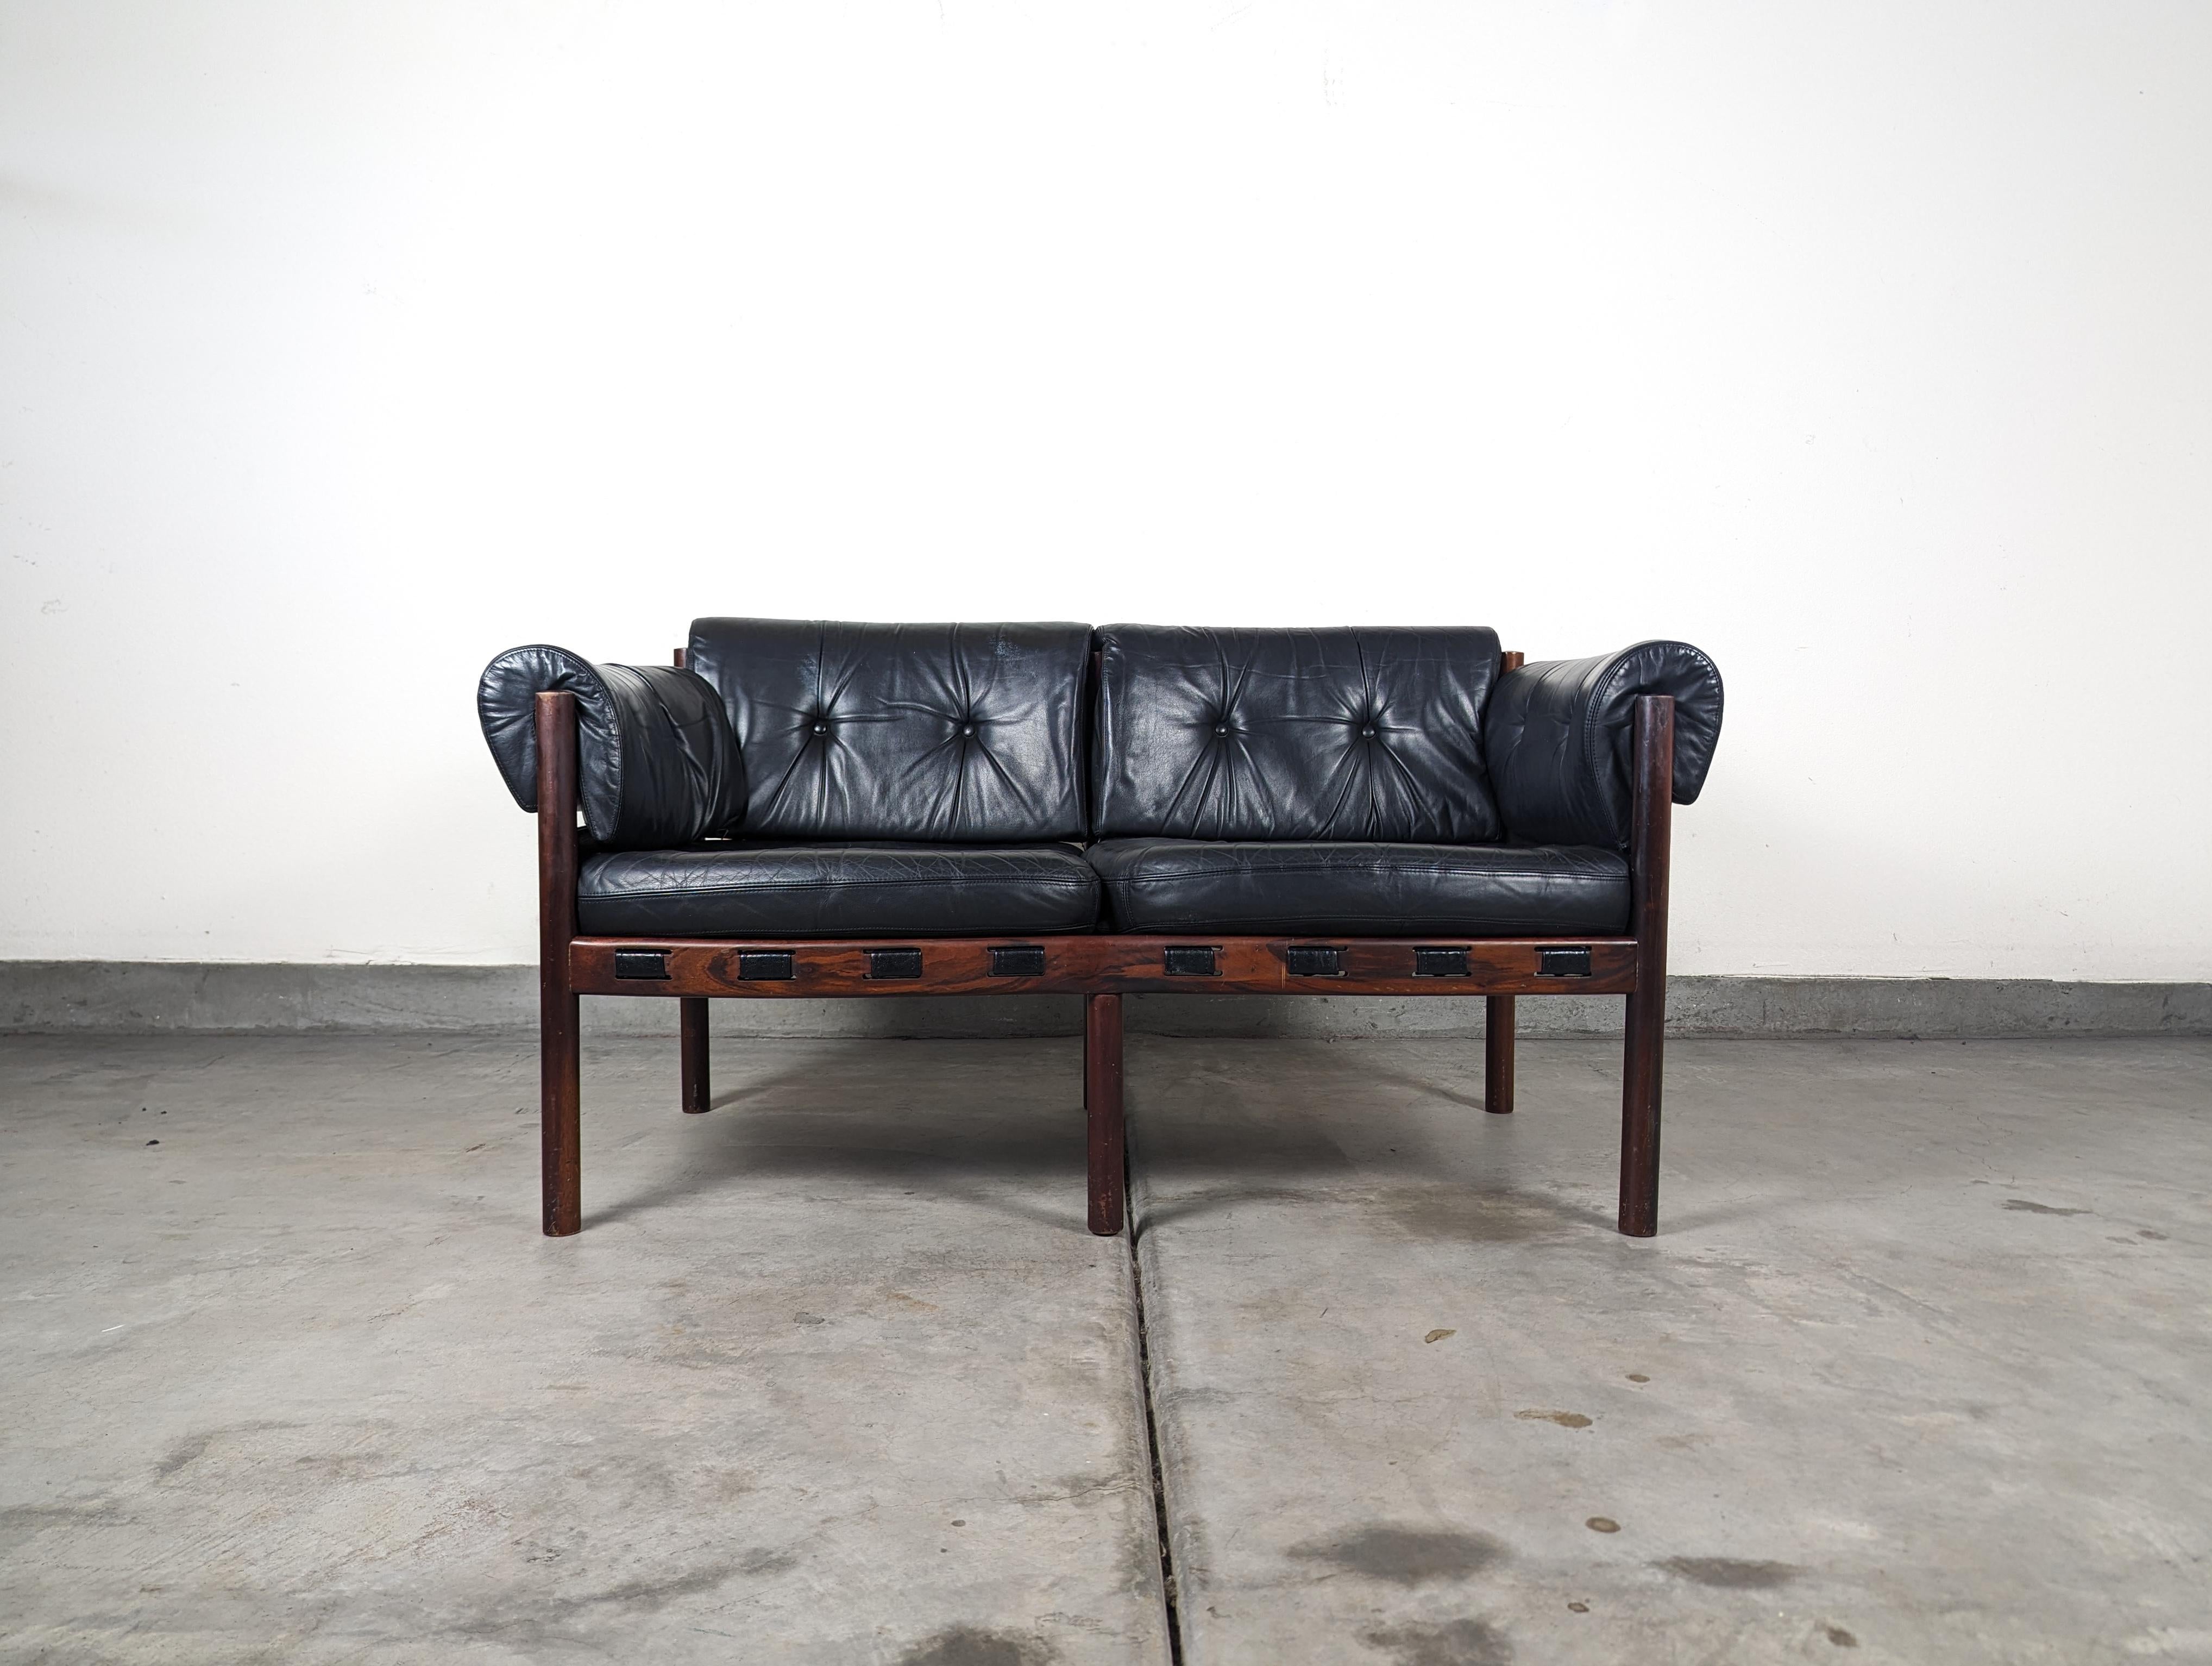 Zum Verkauf steht ein kultiger, seltener und sehr gesuchter Sessel aus der Mitte des Jahrhunderts, entworfen von dem legendären schwedischen Designer Arne Norell. Dieses exquisite Stück stammt aus den 1960er Jahren

Diese spezielle Version ist aus